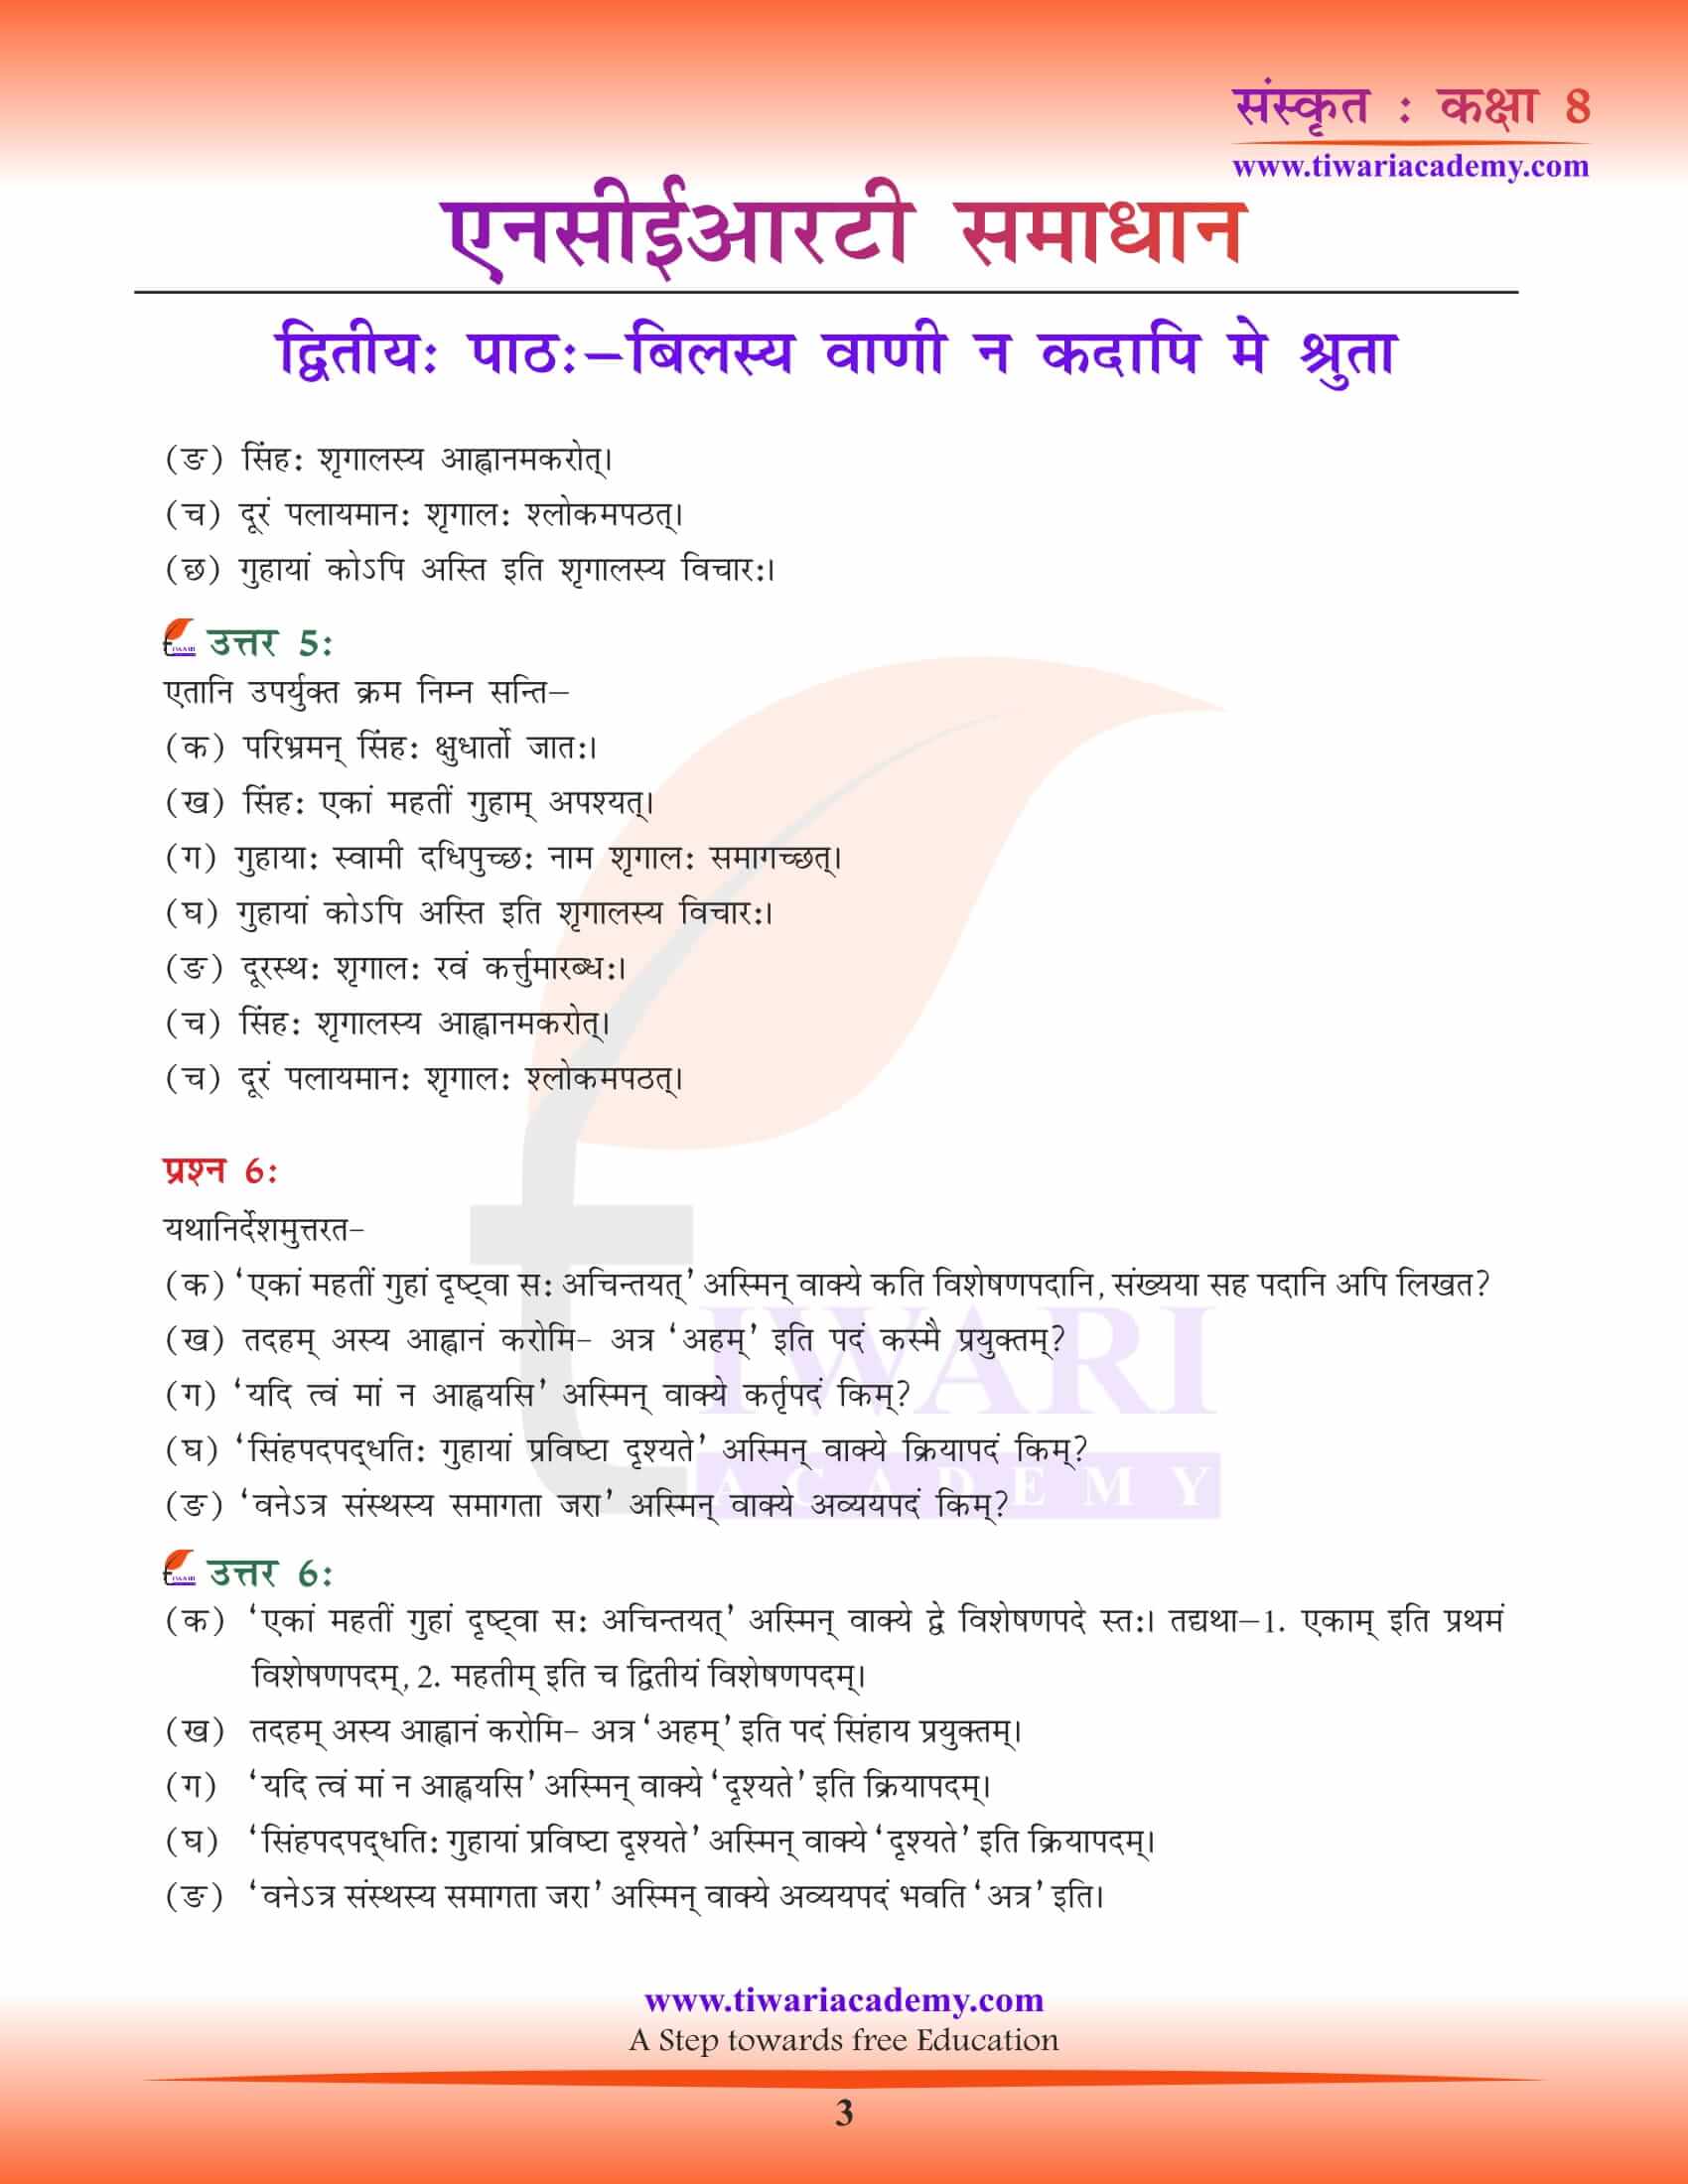 NCERT Solutions for Class 8 Sanskrit Chapter 2 free